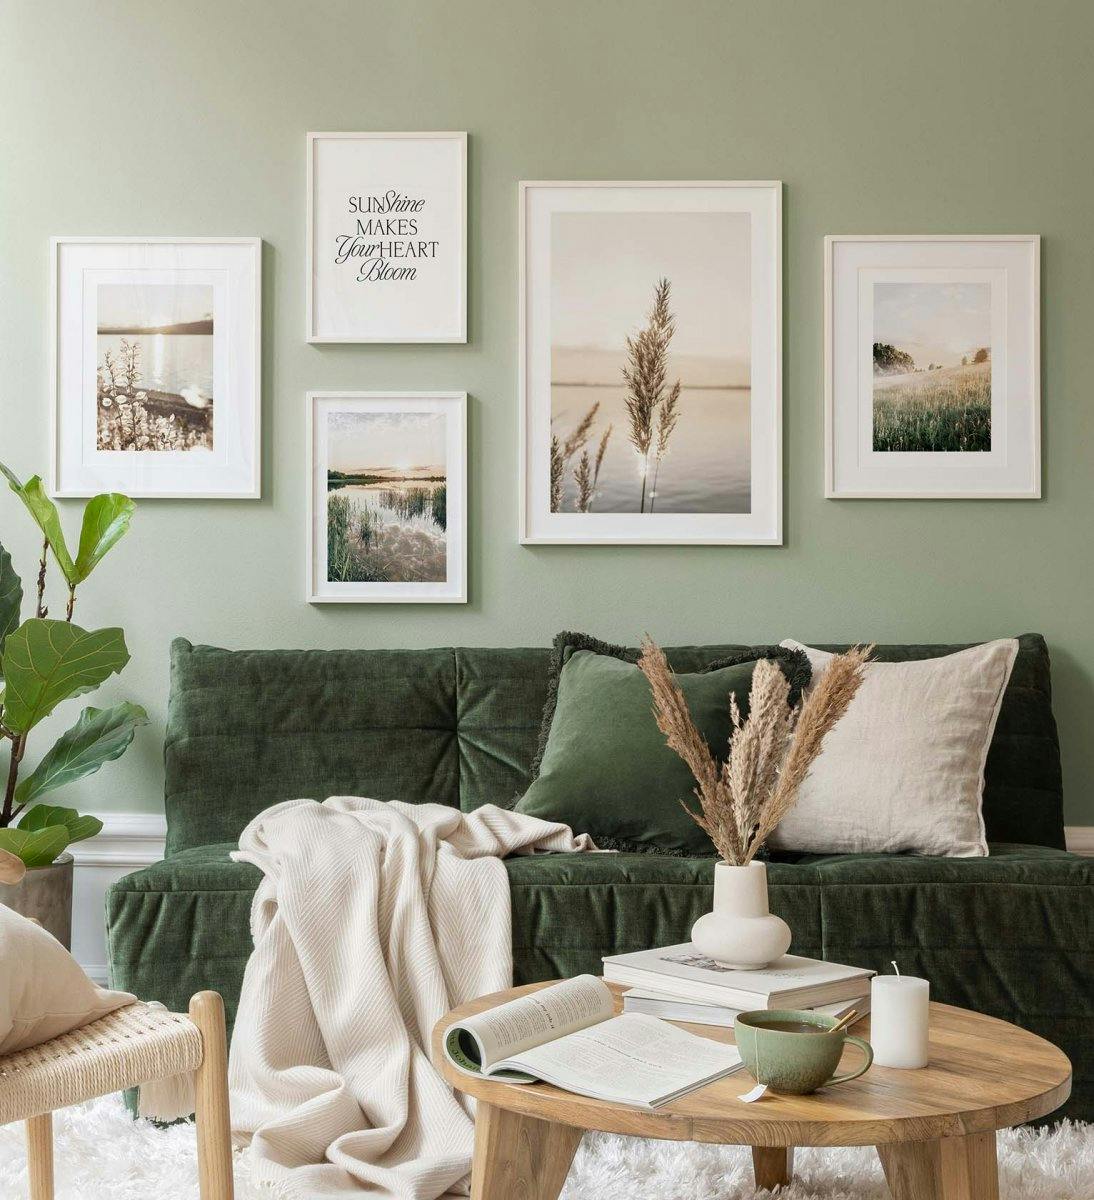 Fotografia di paesaggio in verde crea un'atmosfera serena nel soggiorno